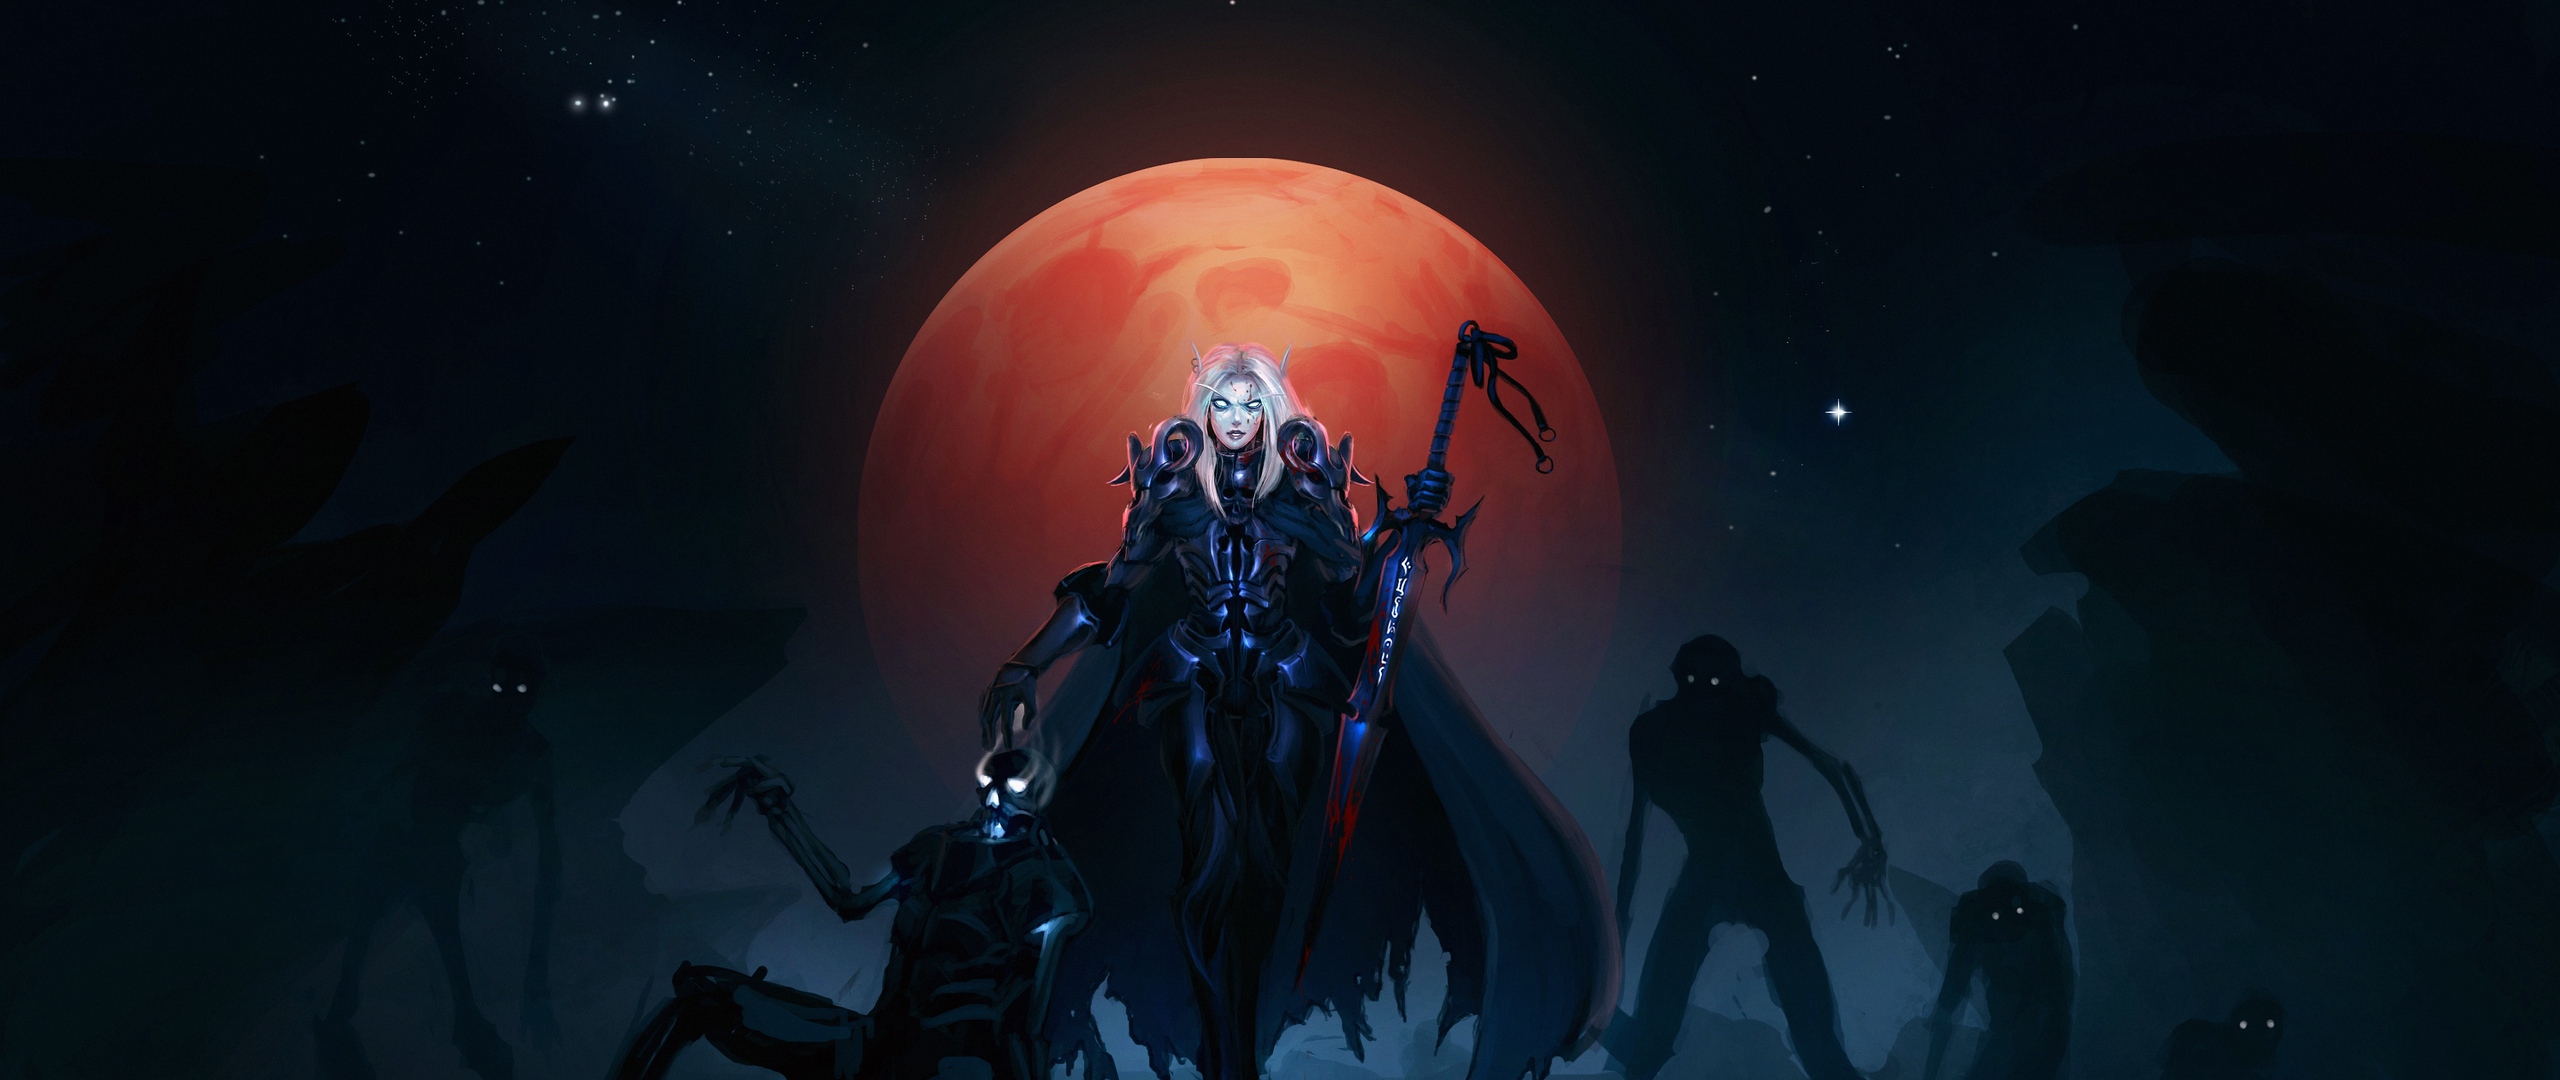 Wallpaper Warcraft, Girl, Moon, Warrior, Sword, Wow, - Death Knight Wallpaper Wow - HD Wallpaper 